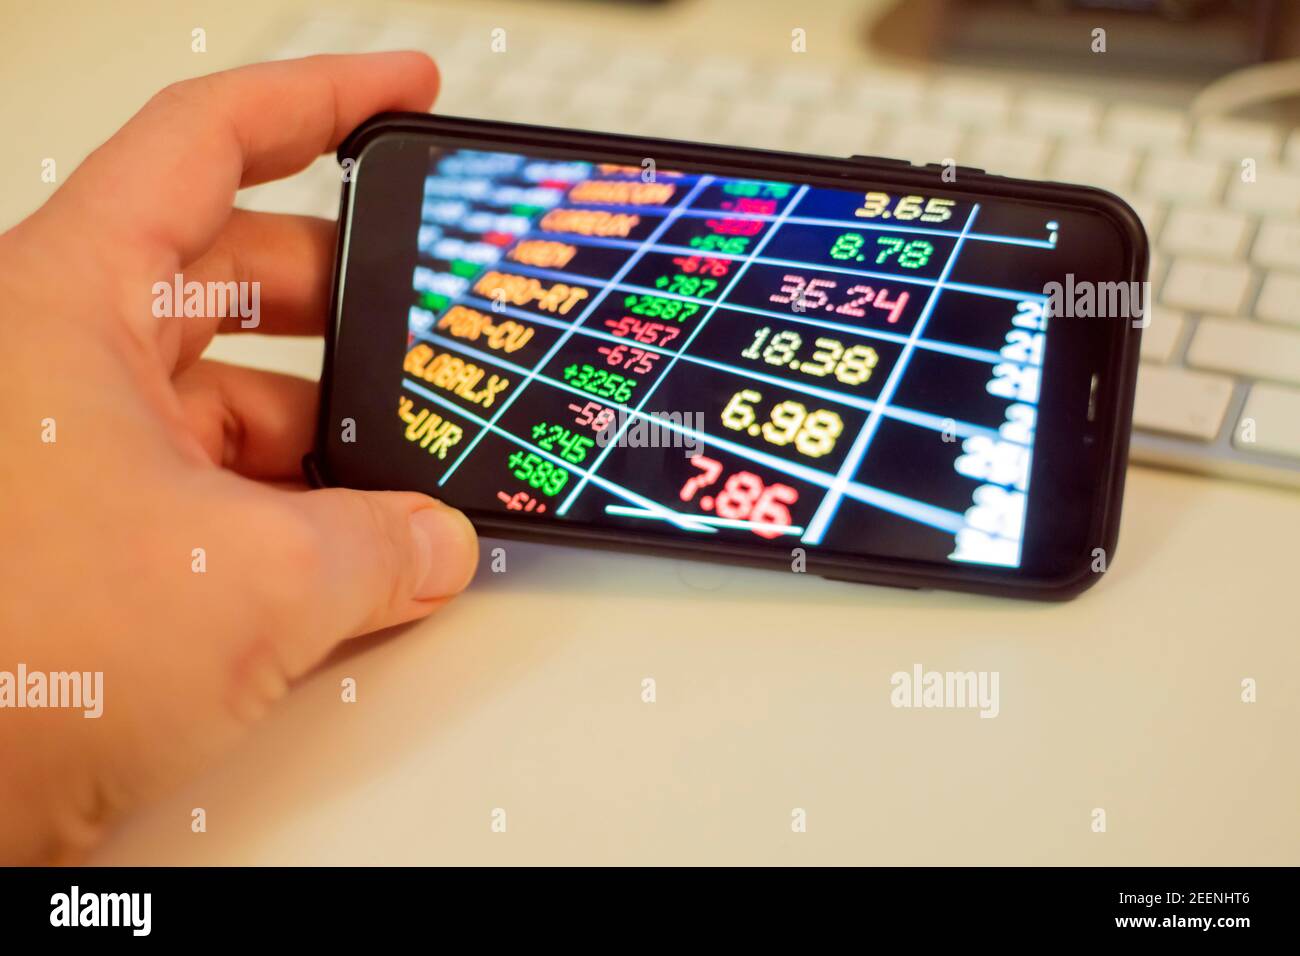 Tecnología empresarial y concepto de mercado de valores: Una mano humana es sostener un teléfono inteligente. En la pantalla hay números de colores que muestran gráficos financieros arriba. Foto de stock